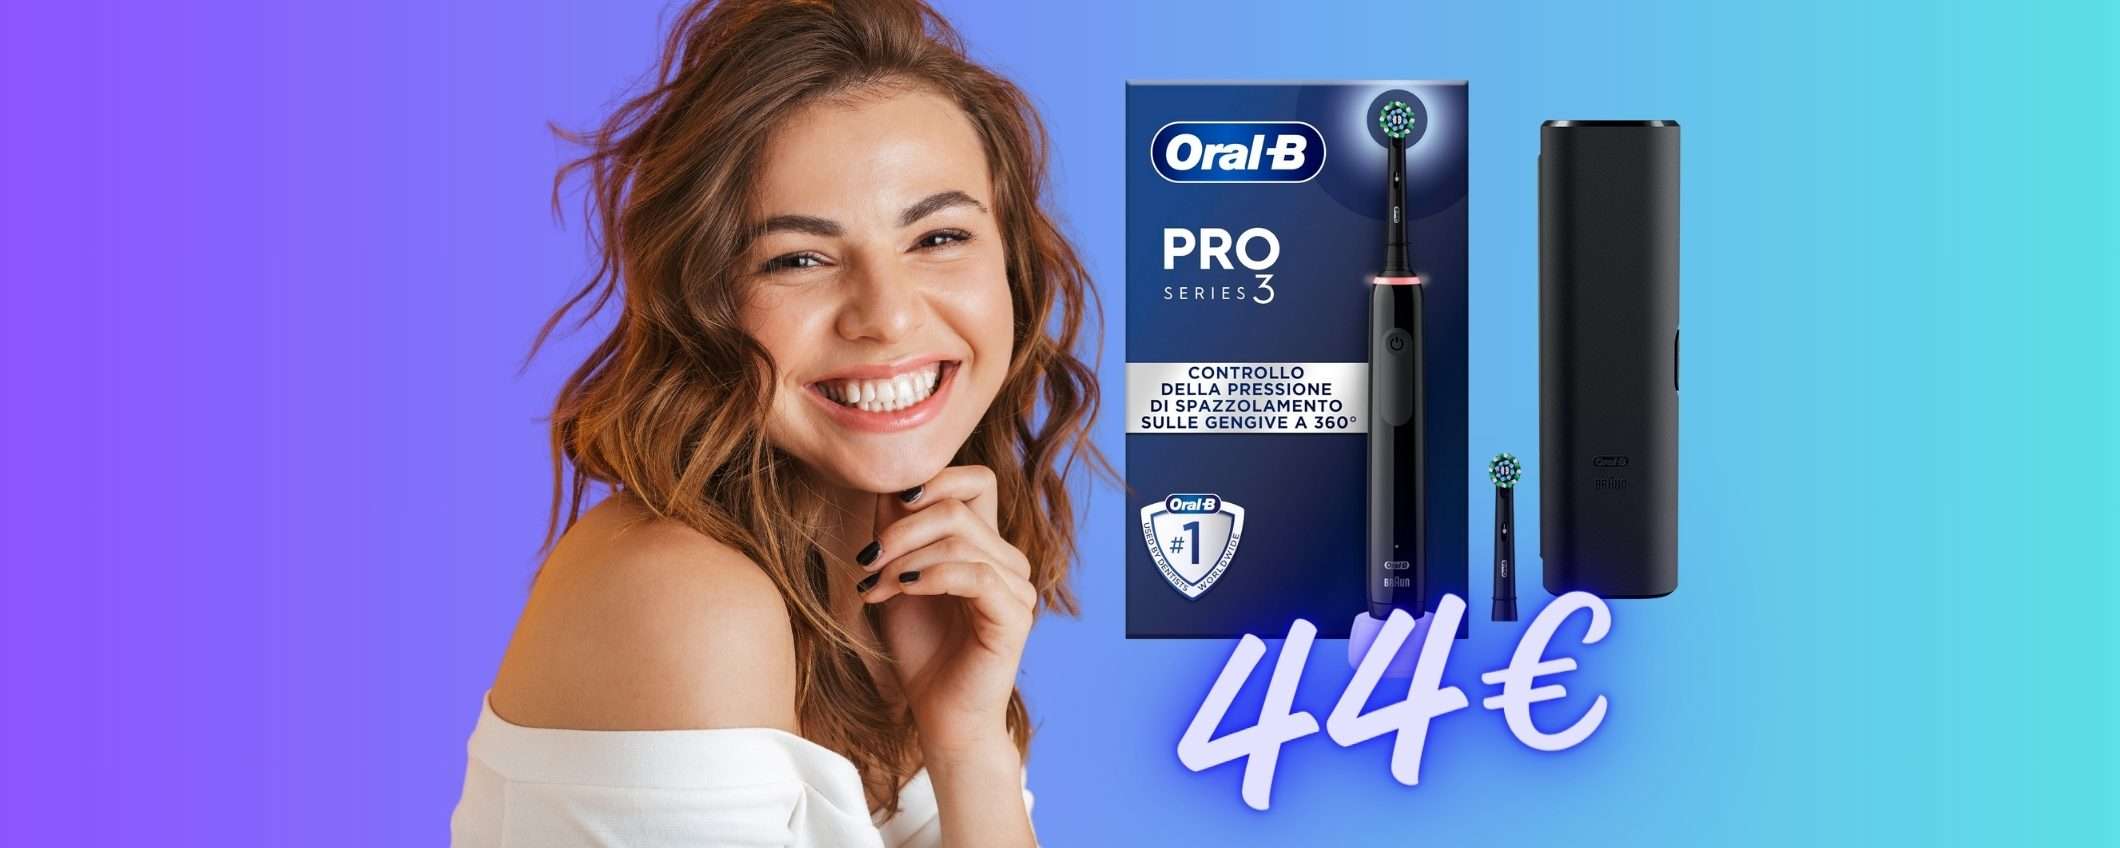 Oral-B Pro 3 con l'OFFERTA a TEMPO di Amazon è tuo a soli 44€